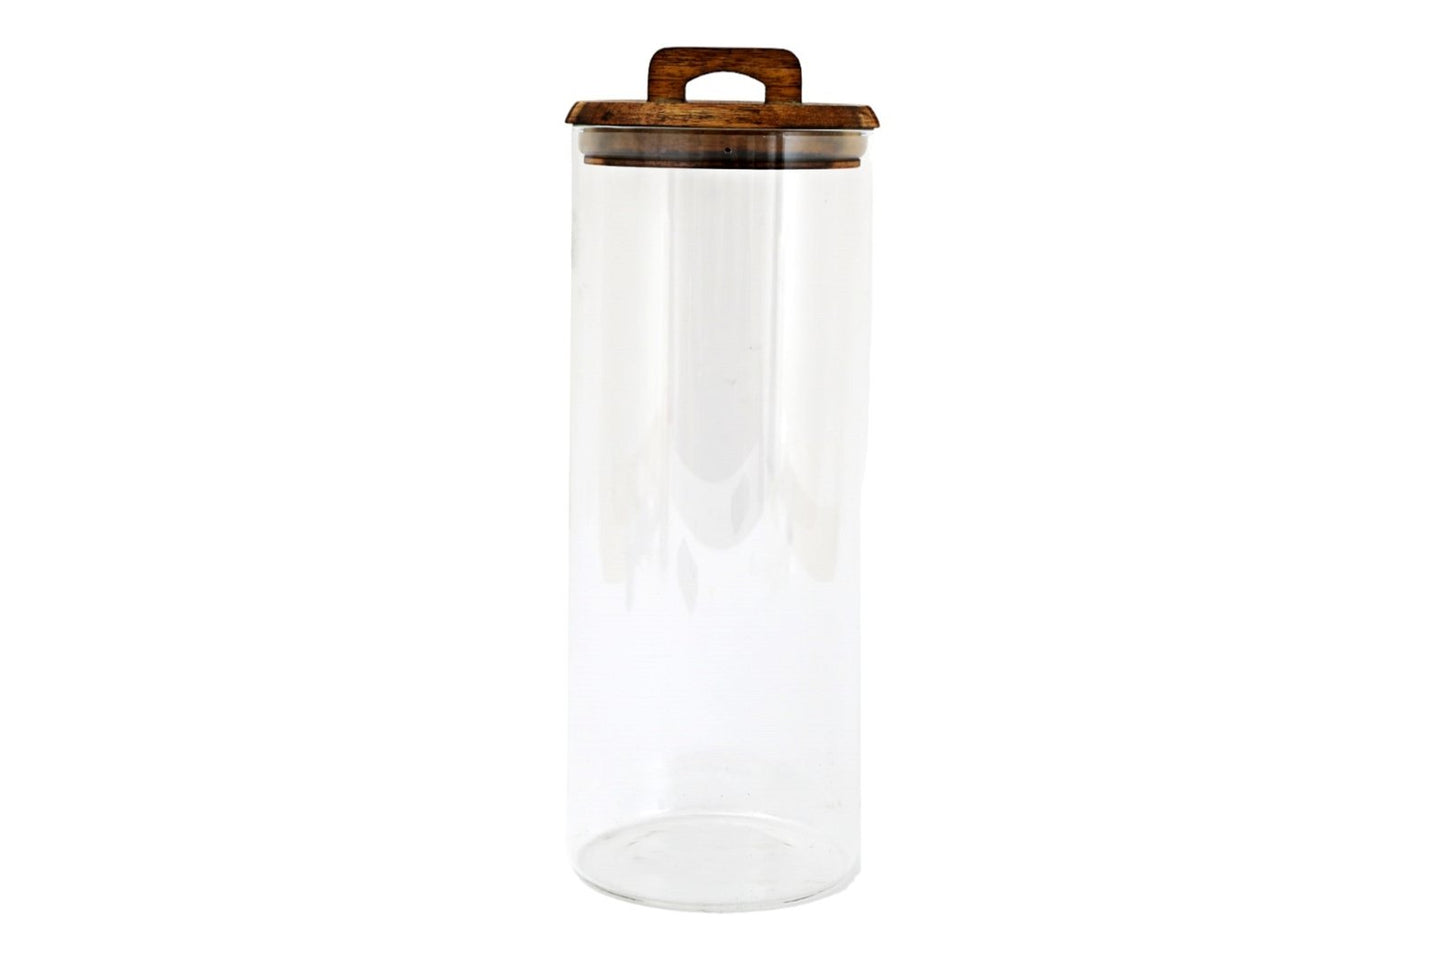 Glass Storage Jar with Acacia Lid 1.7L Storage Jars from Eleanoras